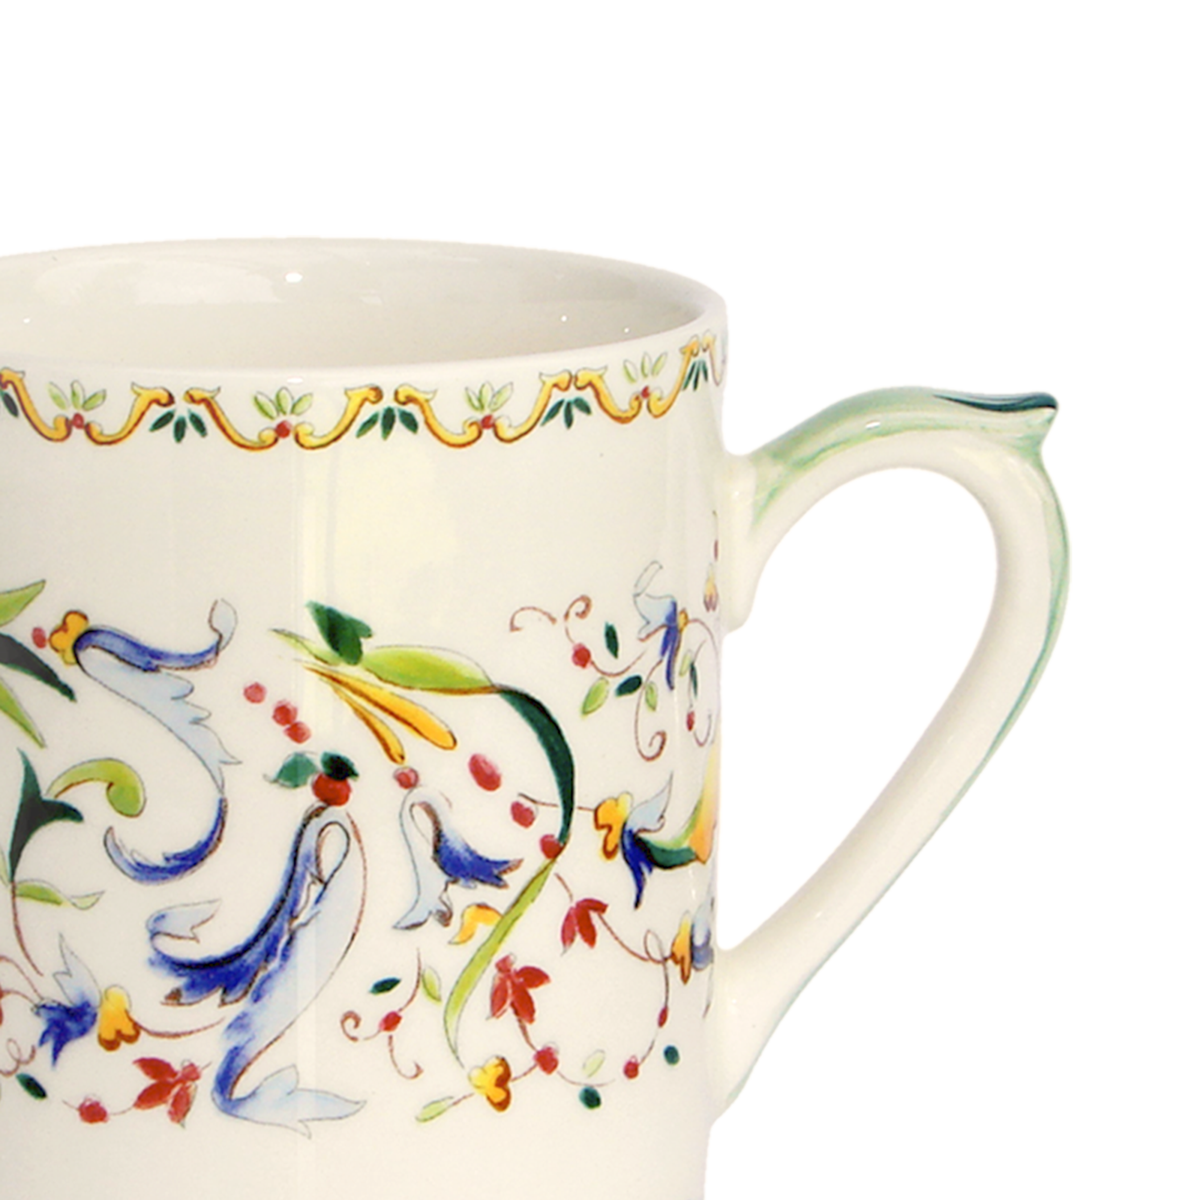 Toscana Coffee Mug